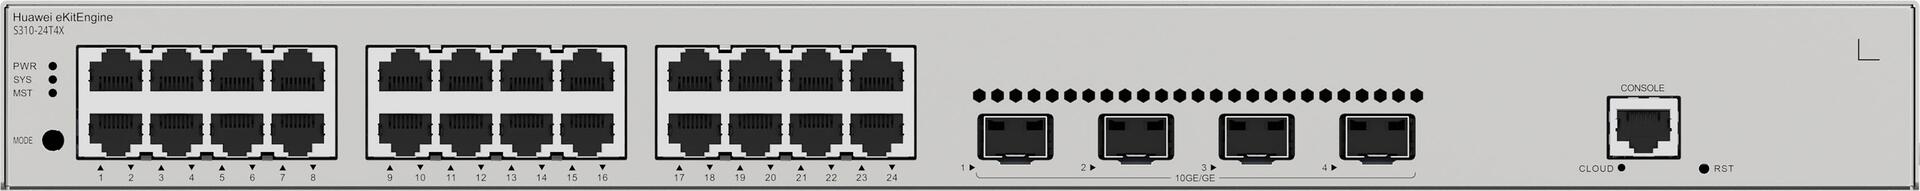 Huawei eKit Switch S310-24T4X - > Produkttyp- Switch- ear-Kategorie (ElektroG): relevant - Kategorie 6: kleine Geräte der IT- und TK-Technik - Kleine Geräte der IT- und TK-Technik B2C (98012381)